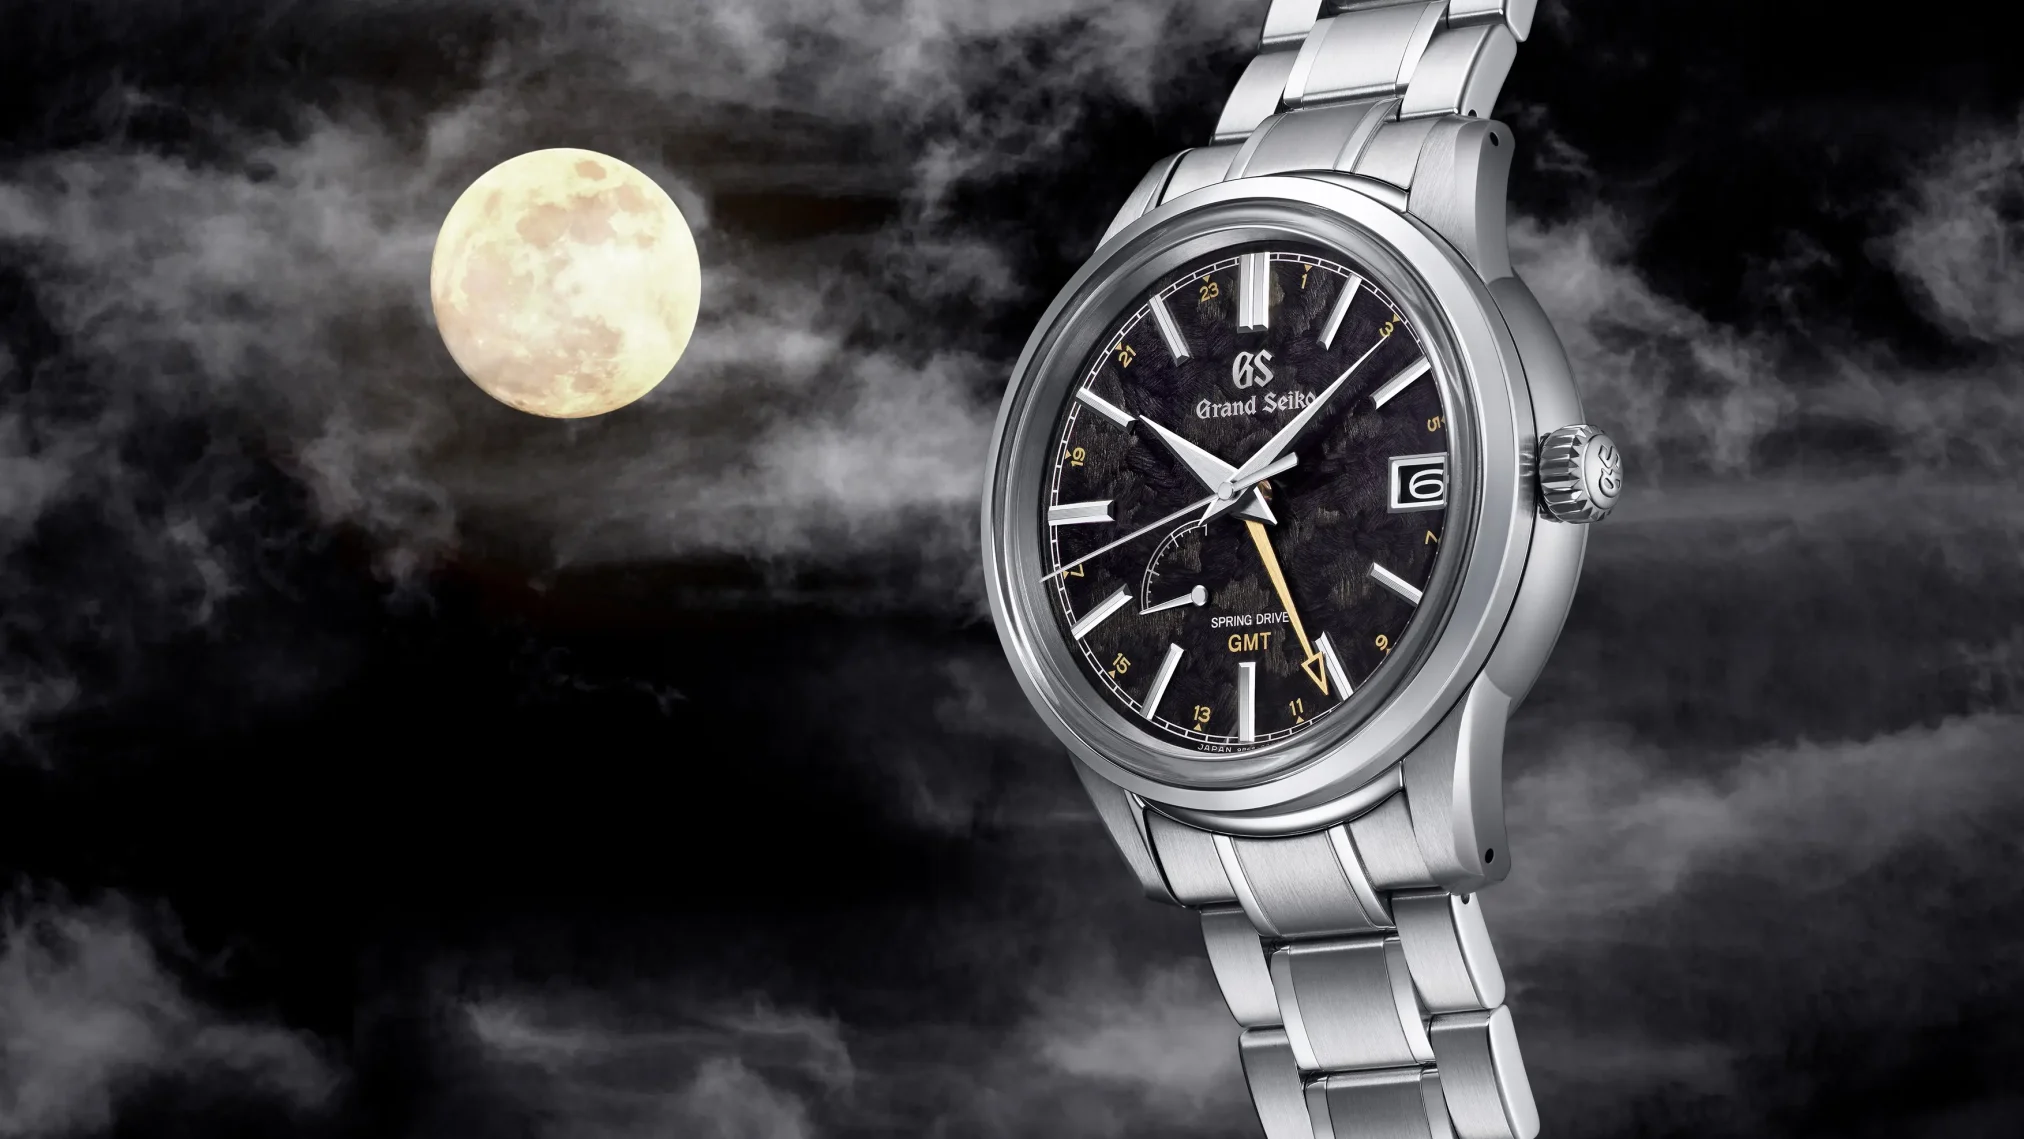 Đồng hồ Grand Seiko Elegance GMT Four Seasons Kanro SBGE271 mặt số màu đen. Dây đeo bằng thép. Thân vỏ bằng thép.